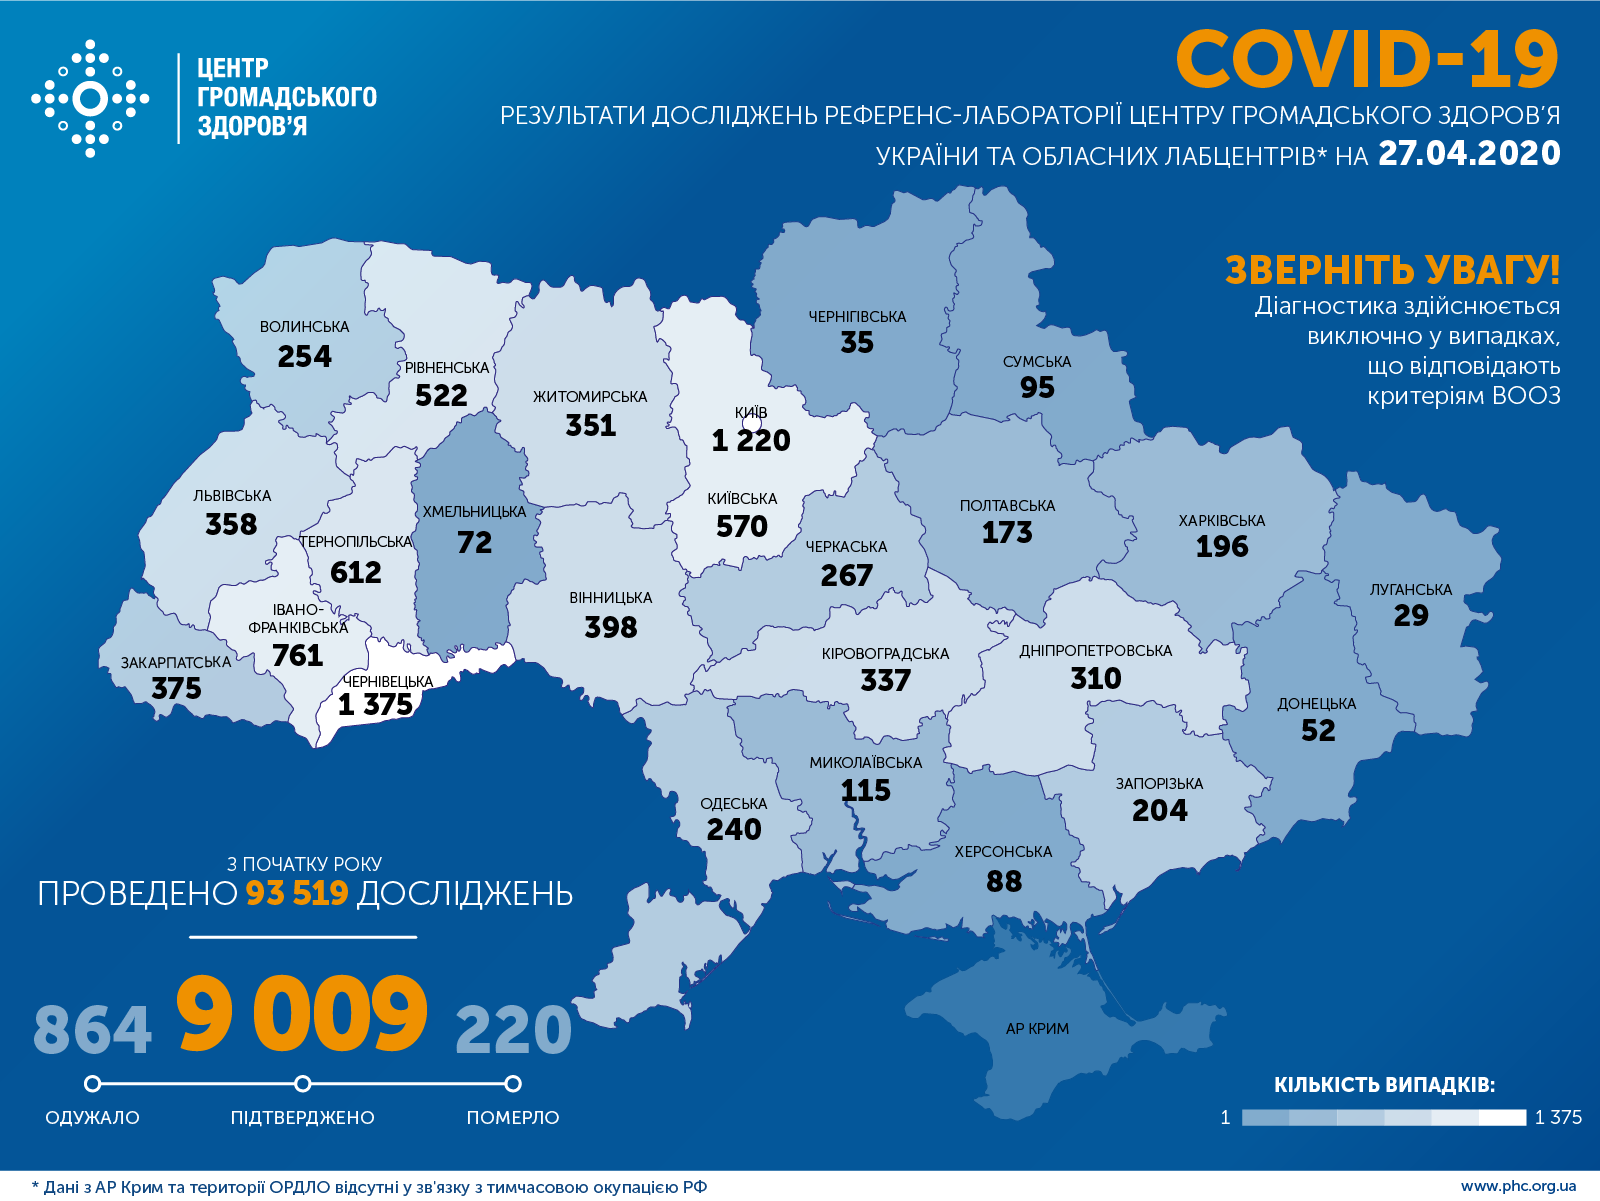 Коронавирус. В Украине 9009 зараженных, 392 новых случая COVID-19 за сутки